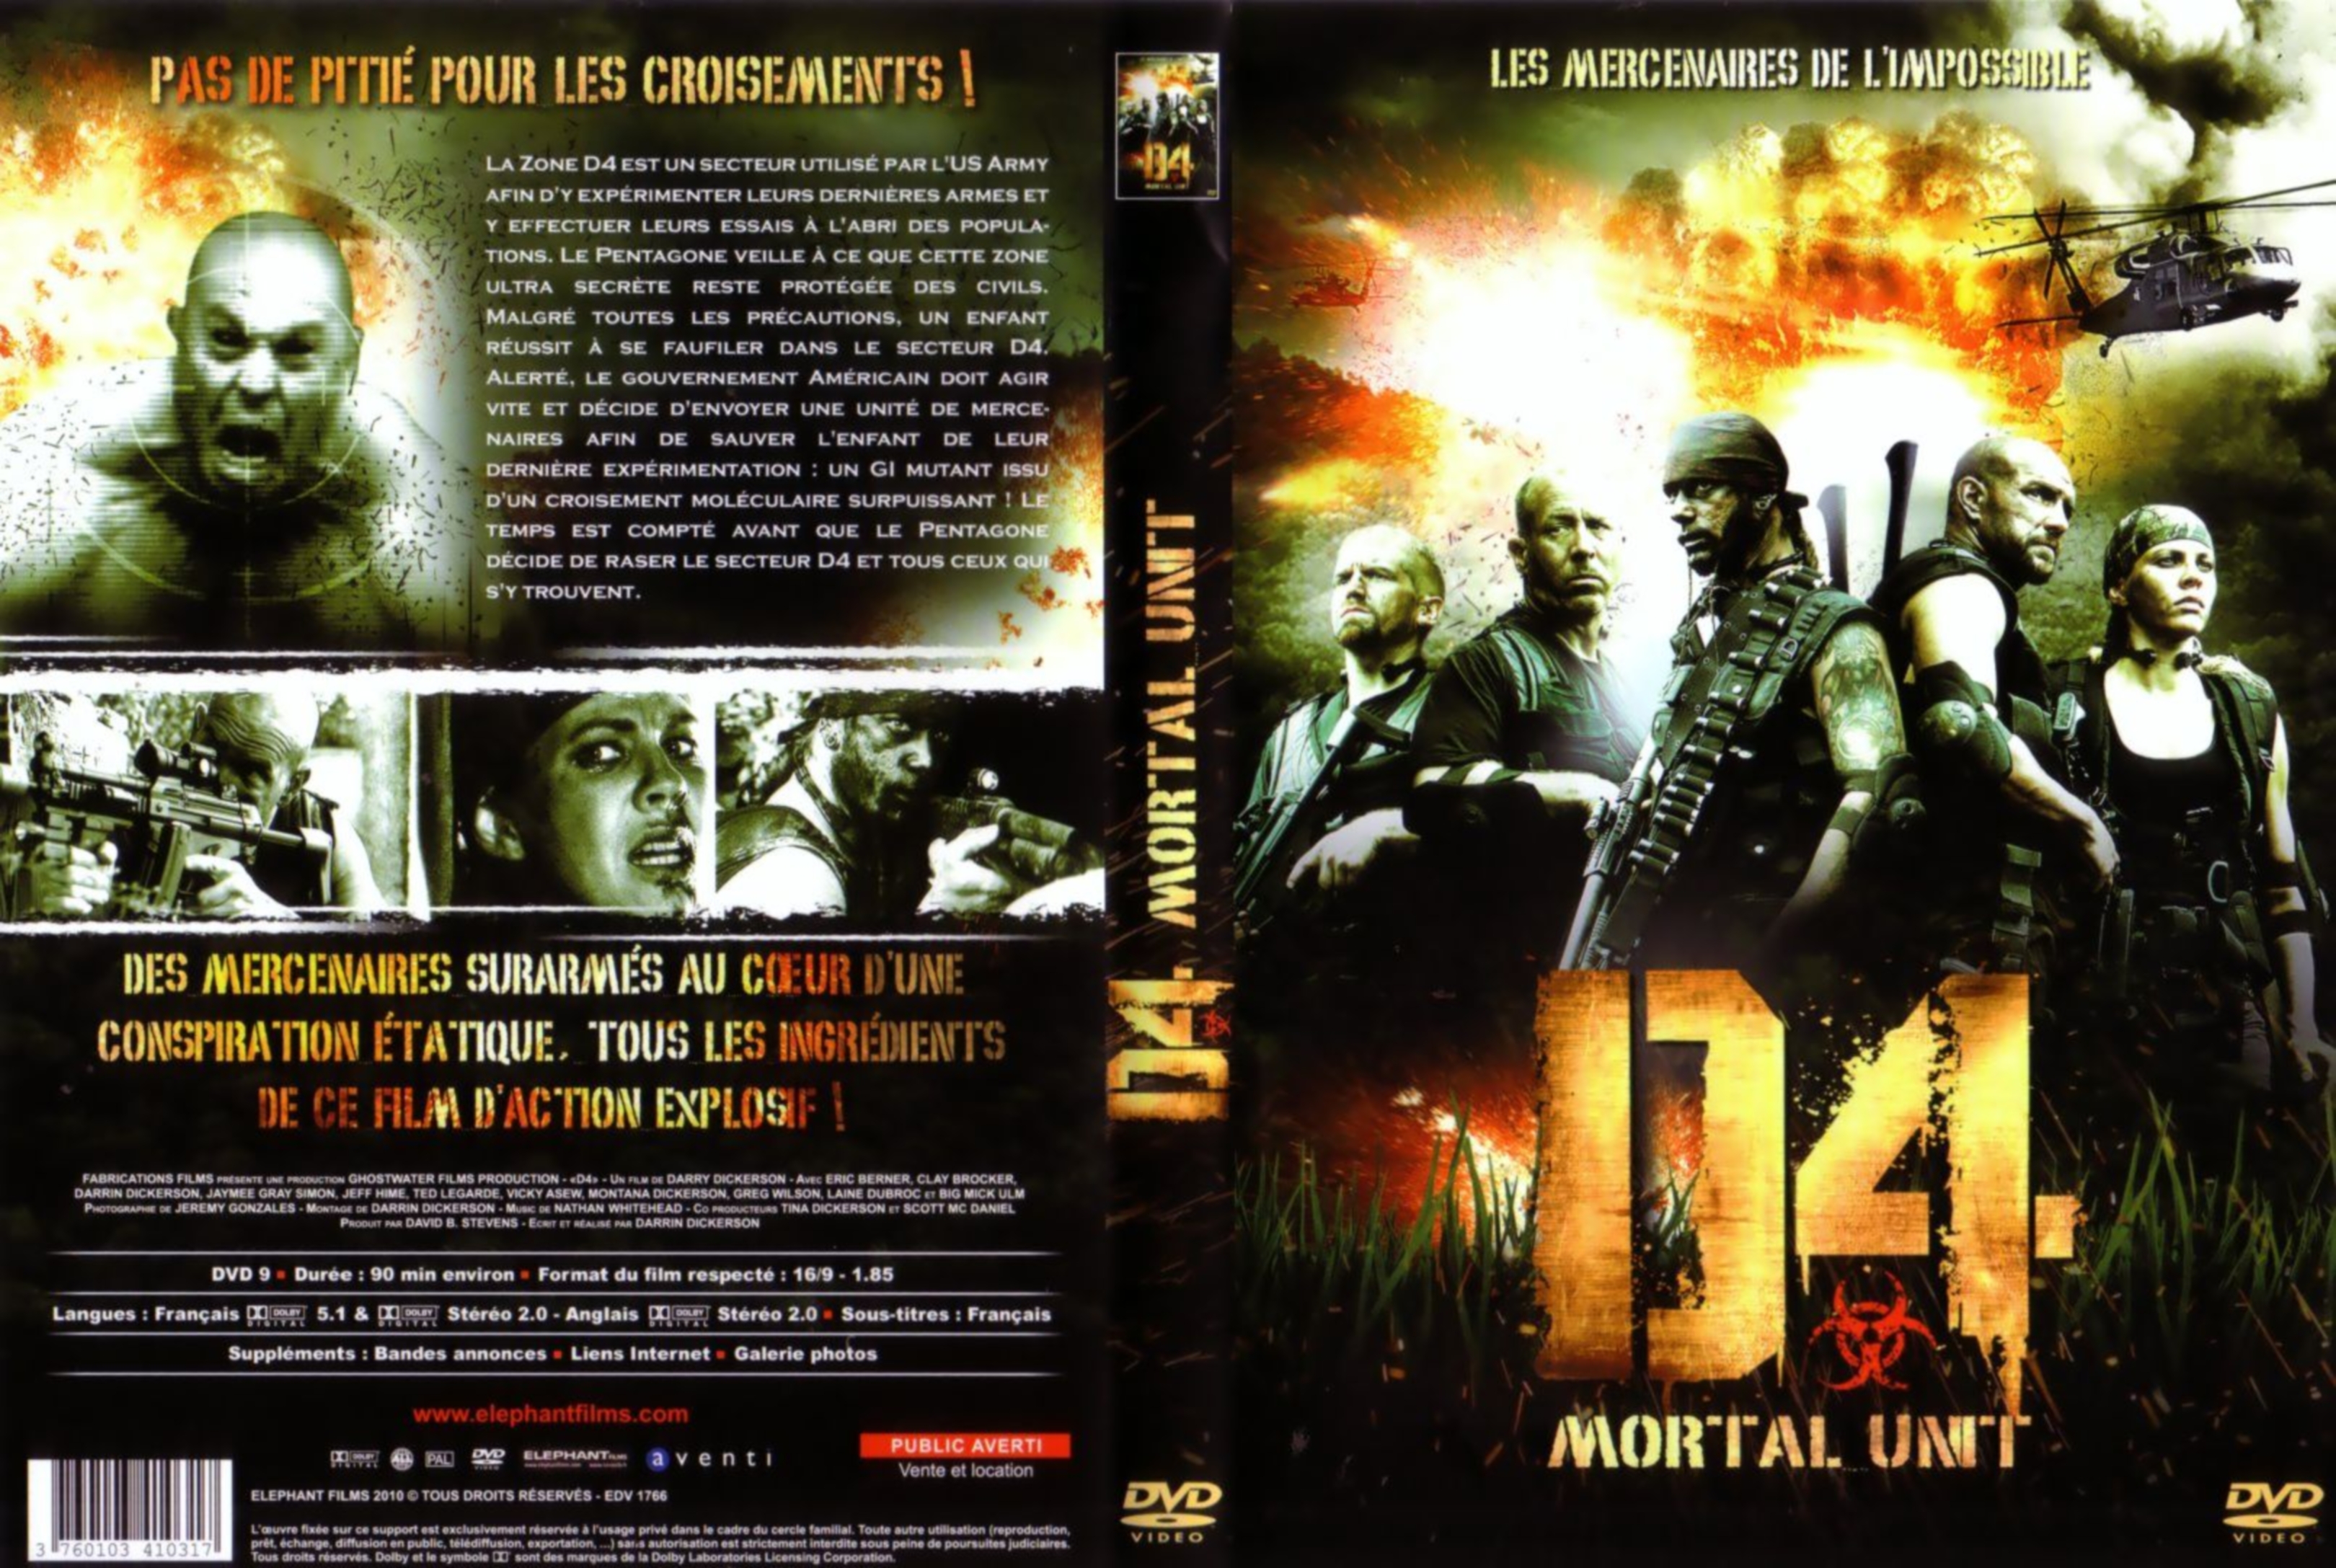 Jaquette DVD D4 mortal unit